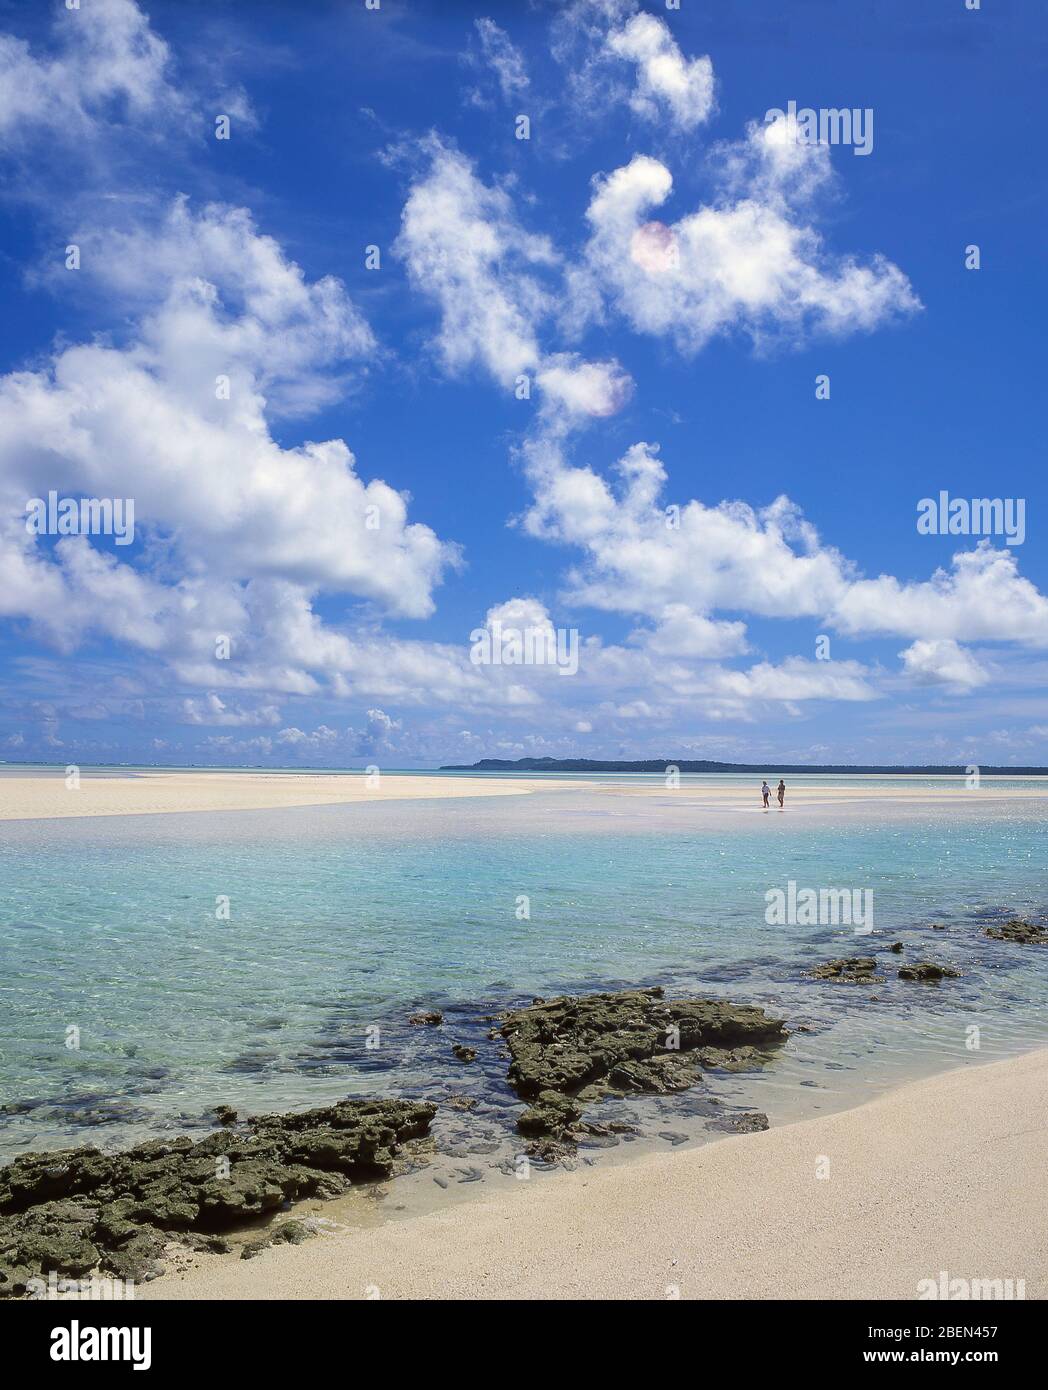 Tropical beach, Aitutaki Atoll, Cook Islands Stock Photo